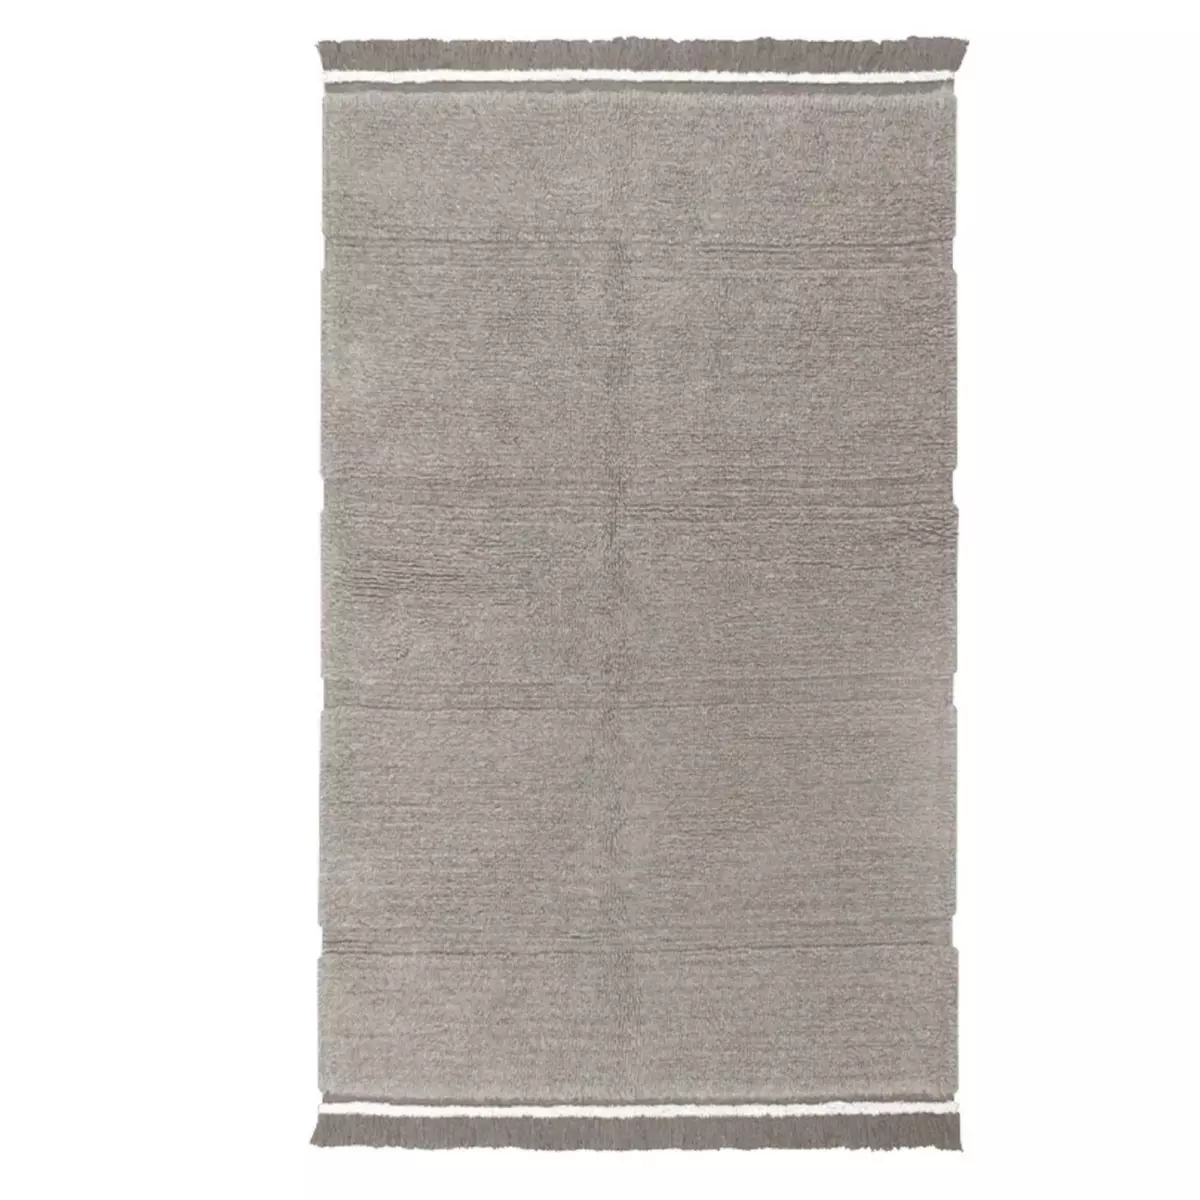 Lorena Canals Tapis en laine gris, à franges - 200 x 300 cm